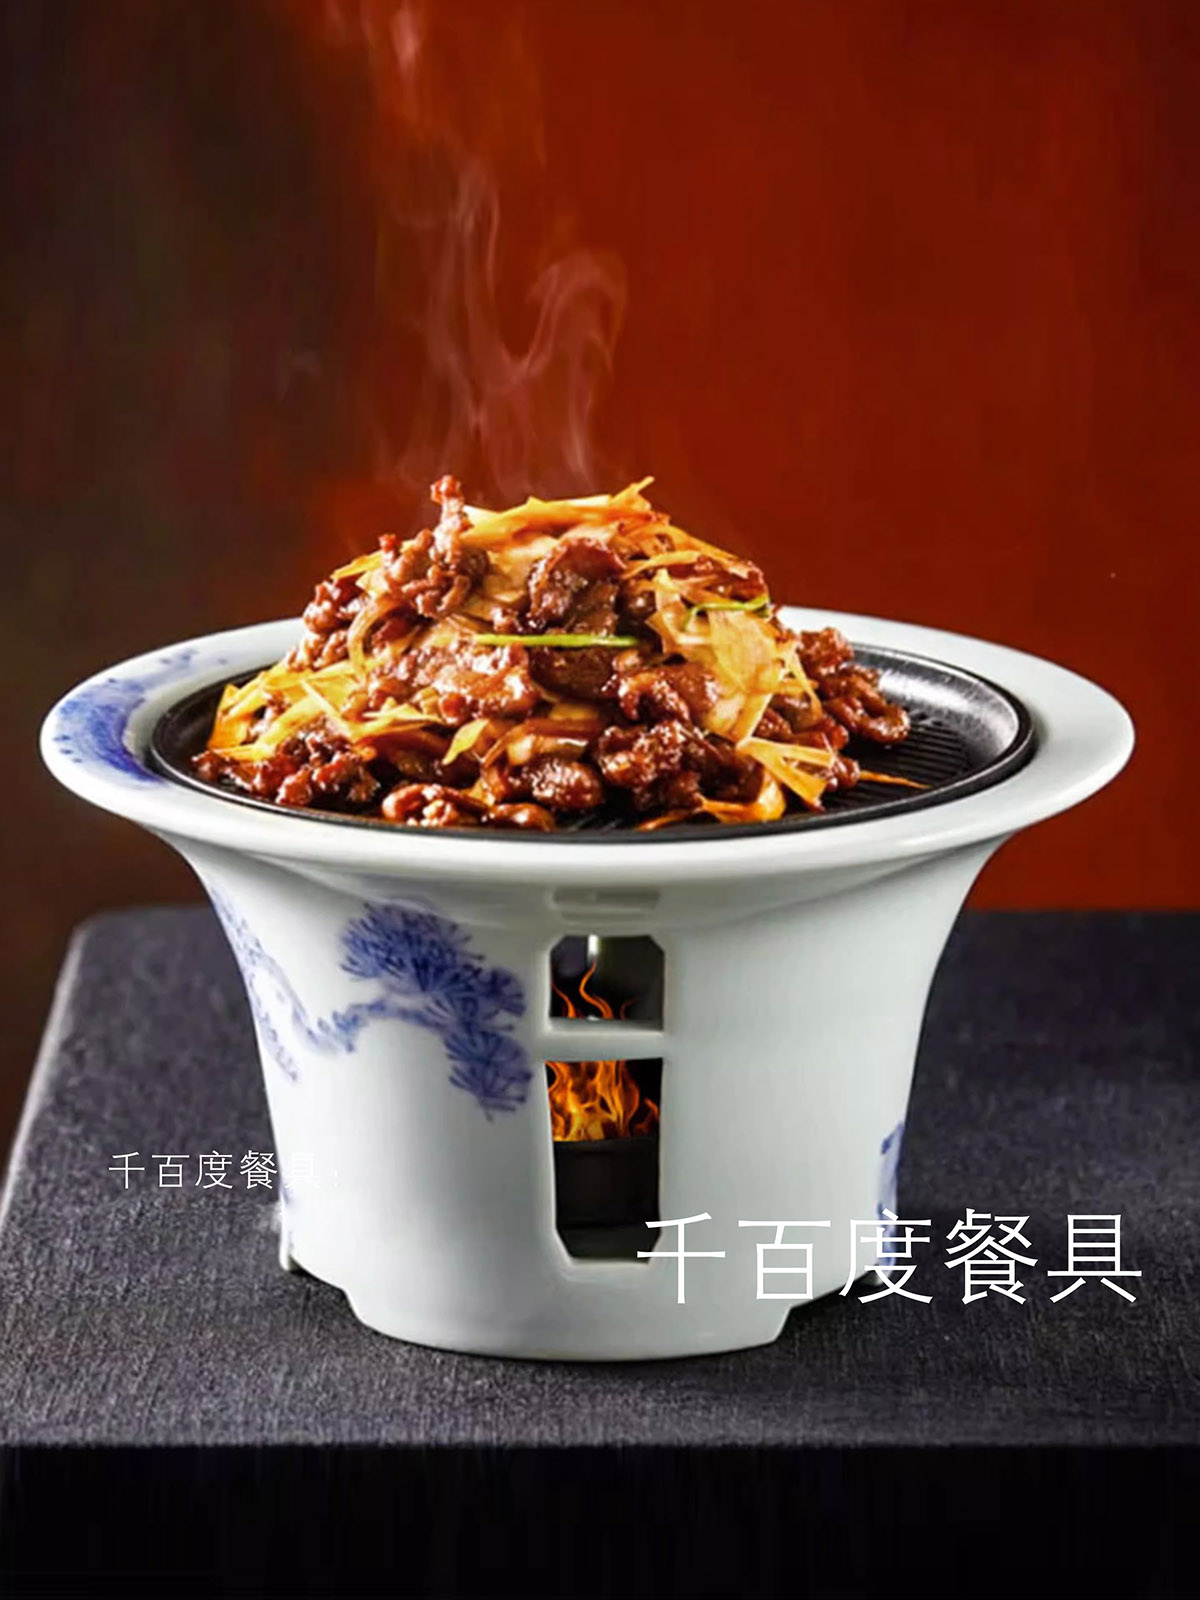 酒店创意特色铁板烧菜盘子青花陶瓷炙子烤肉盘中式加热炉保温餐具